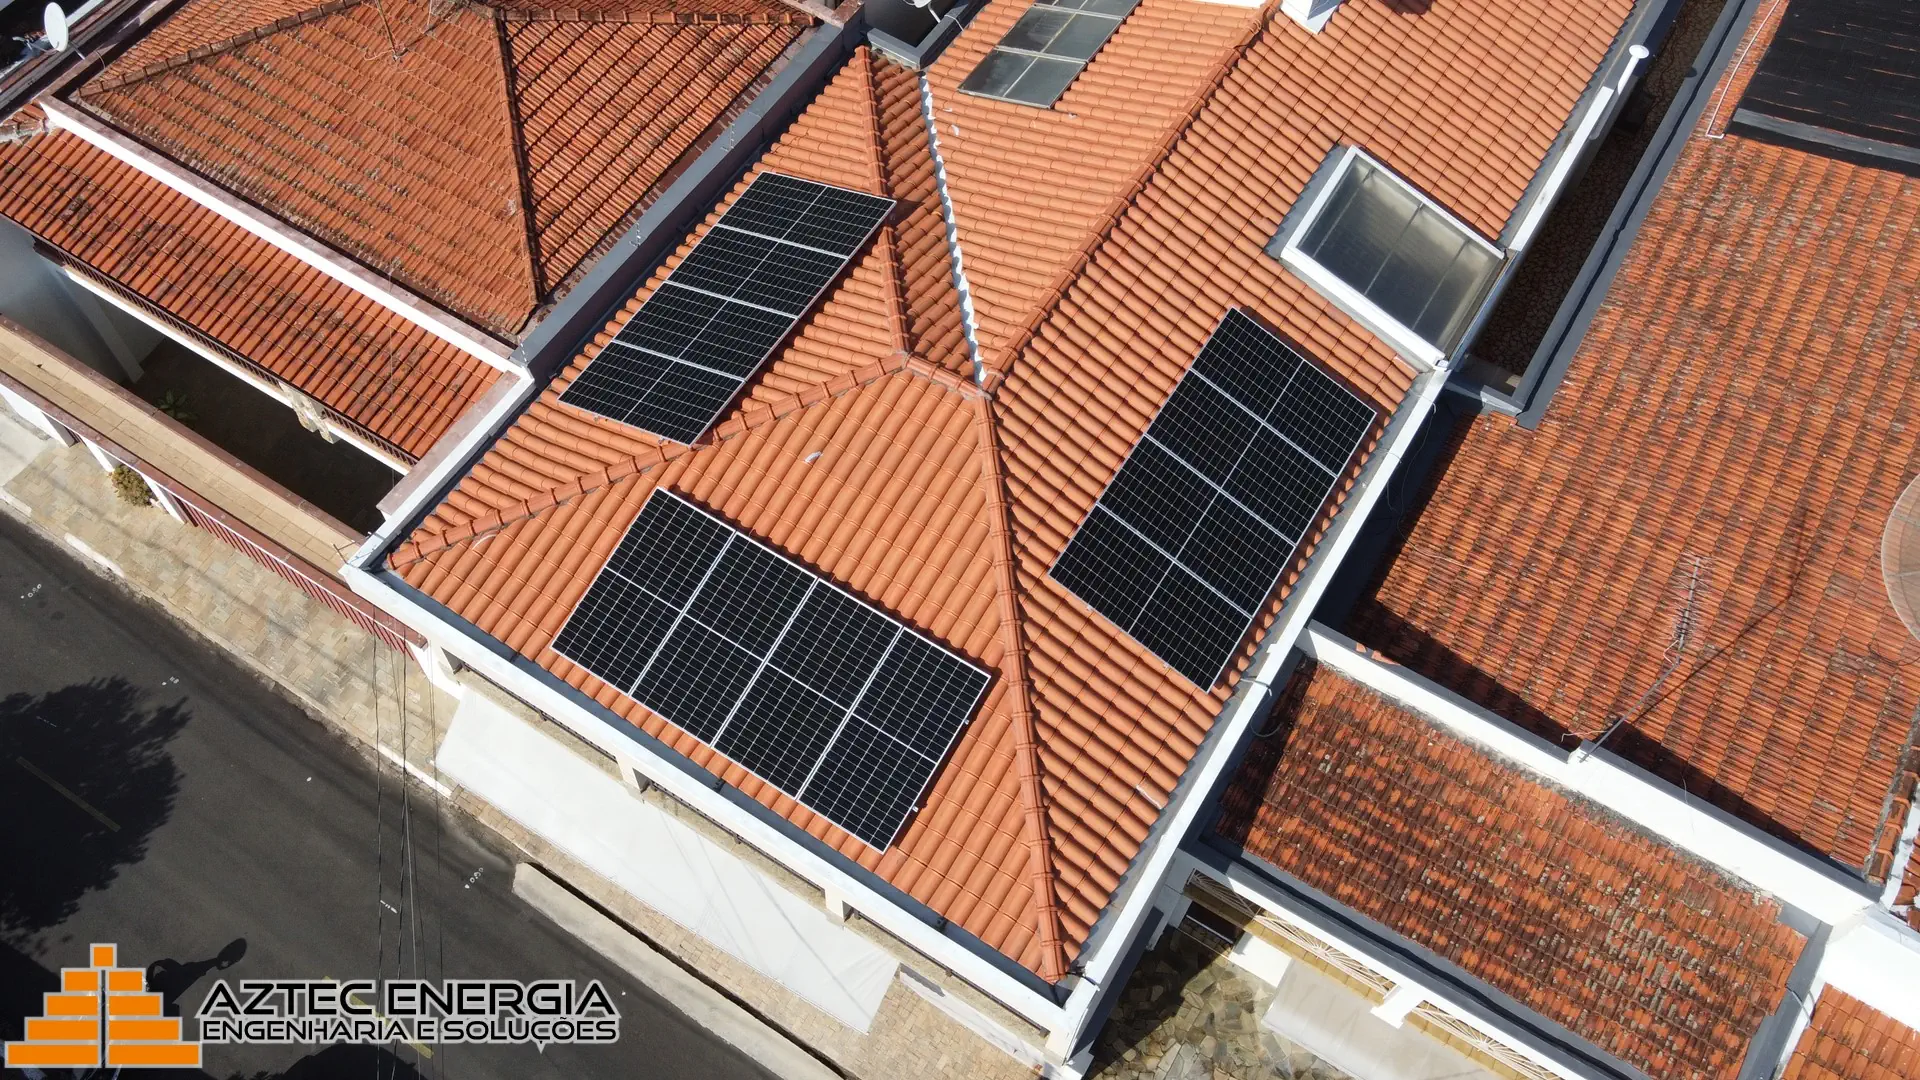 Residência em Pedreira com um sistema de energia solar fotovoltaica.